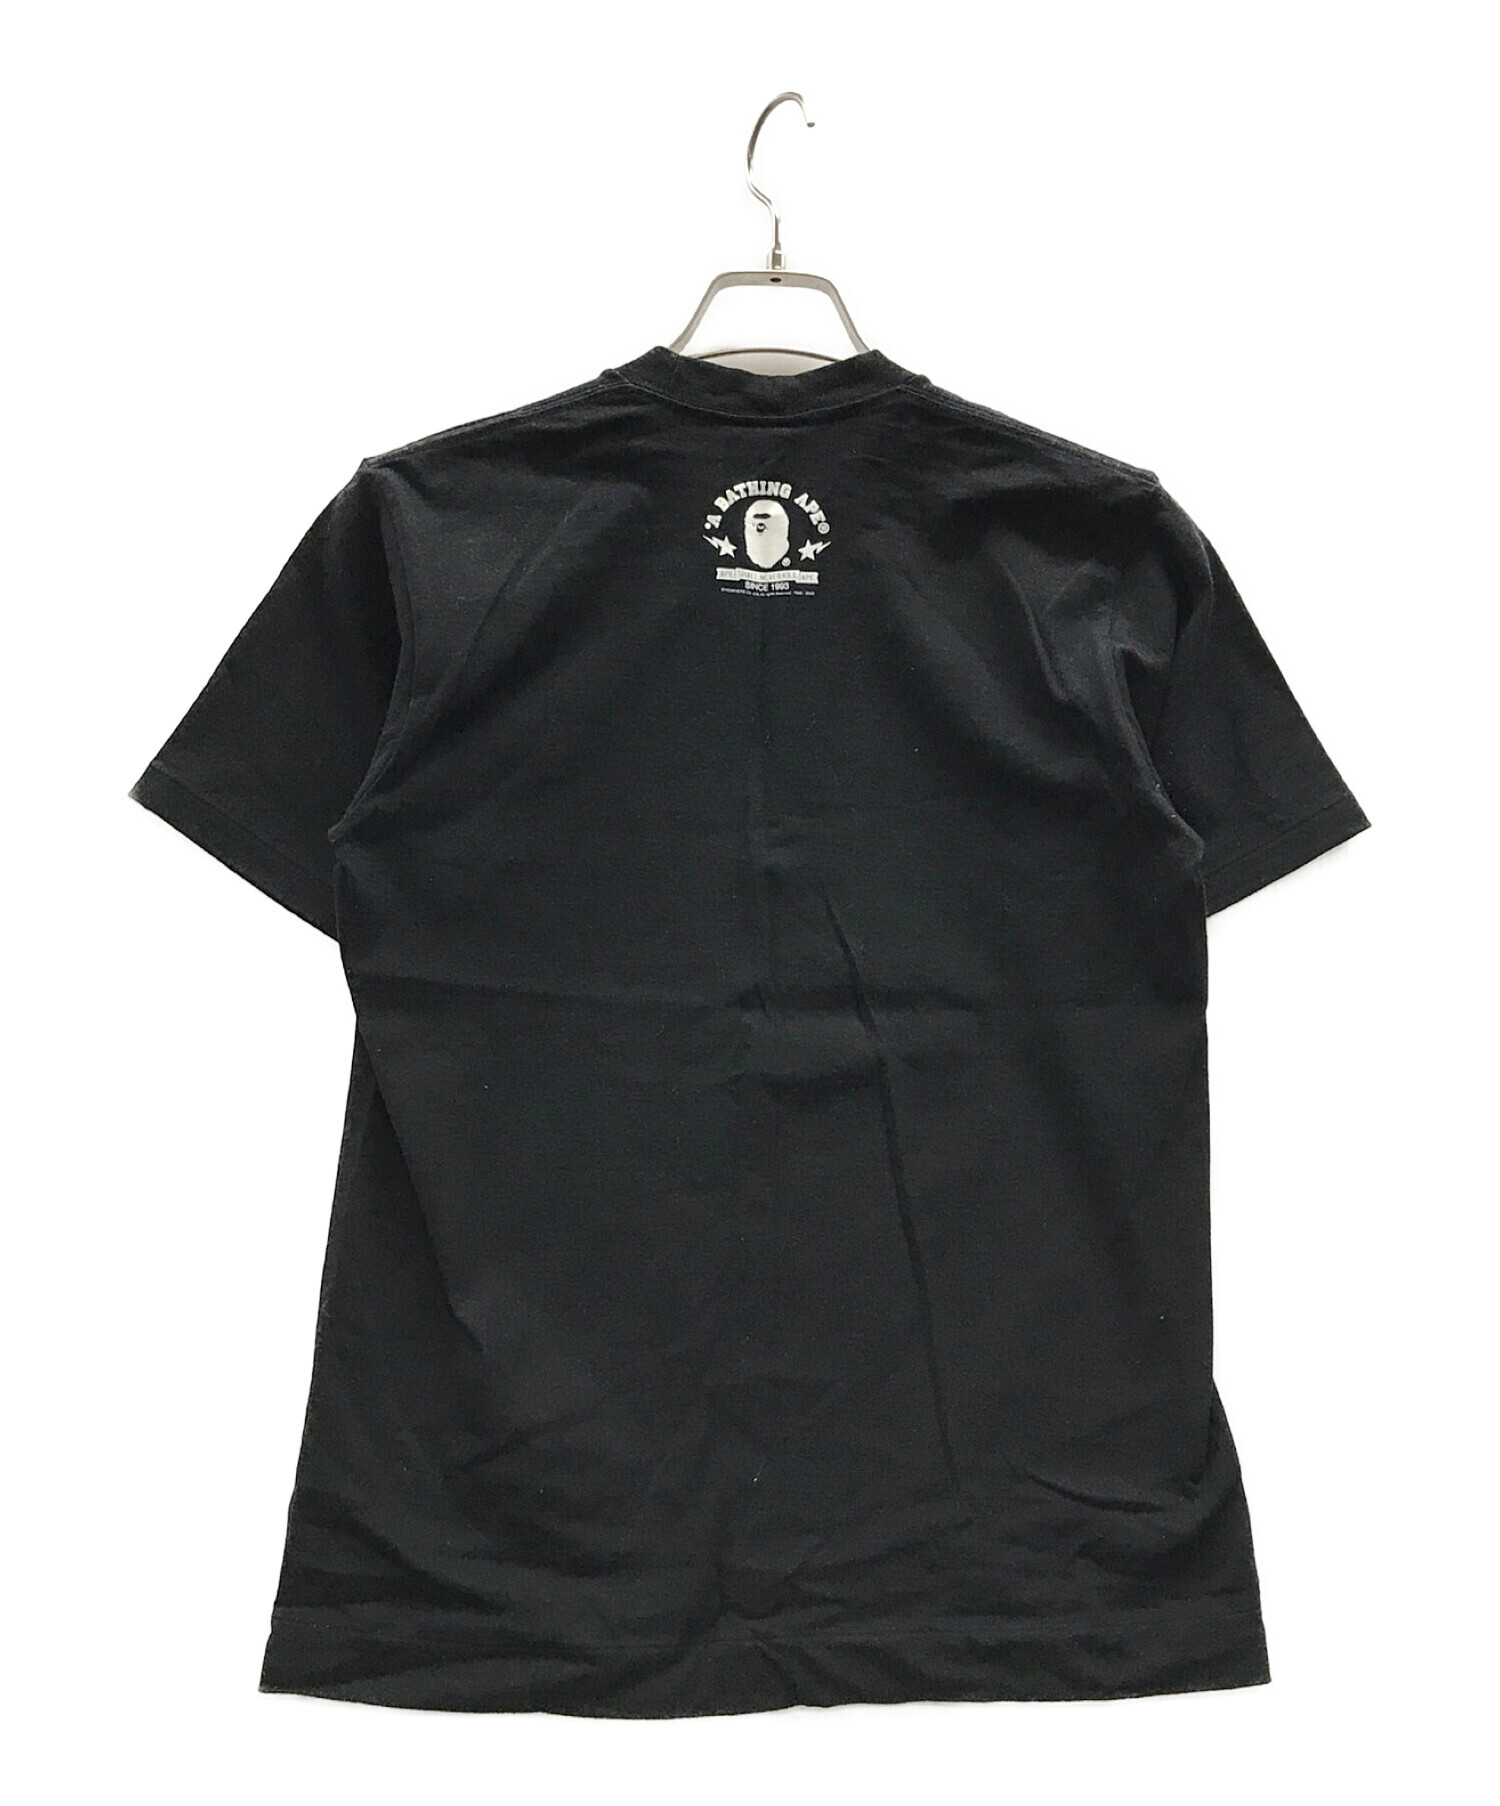 Tシャツ/カットソー(半袖/袖なし)エイプ×ベアブリック Tシャツ初期モデル